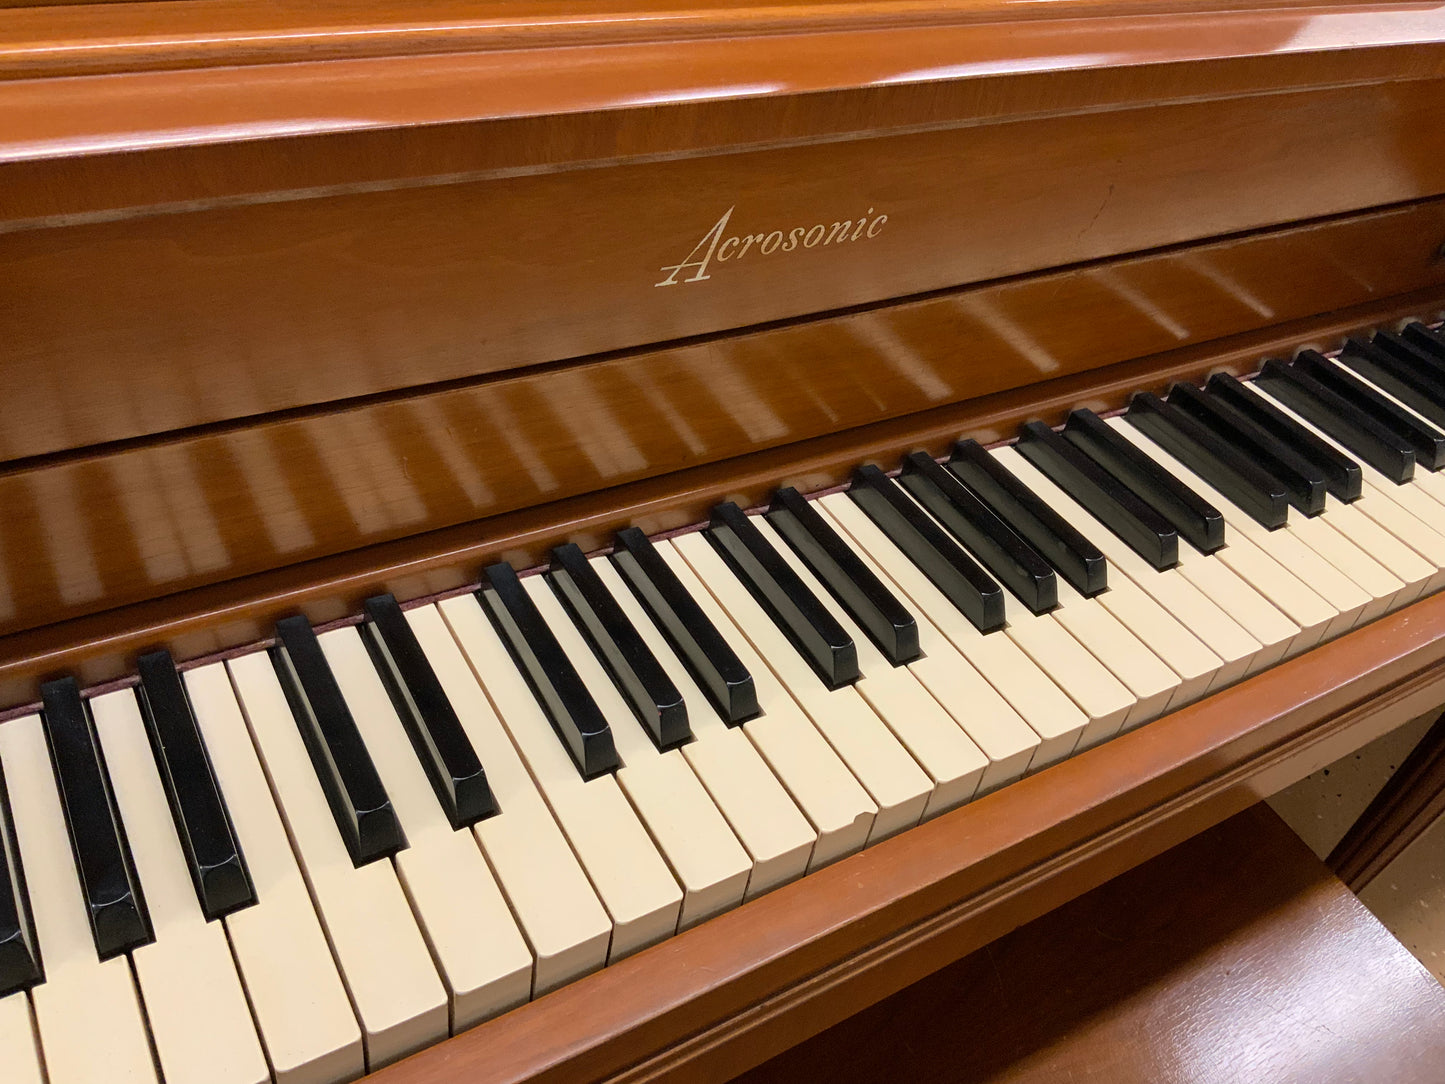 Acrosonic by Baldwin Piano